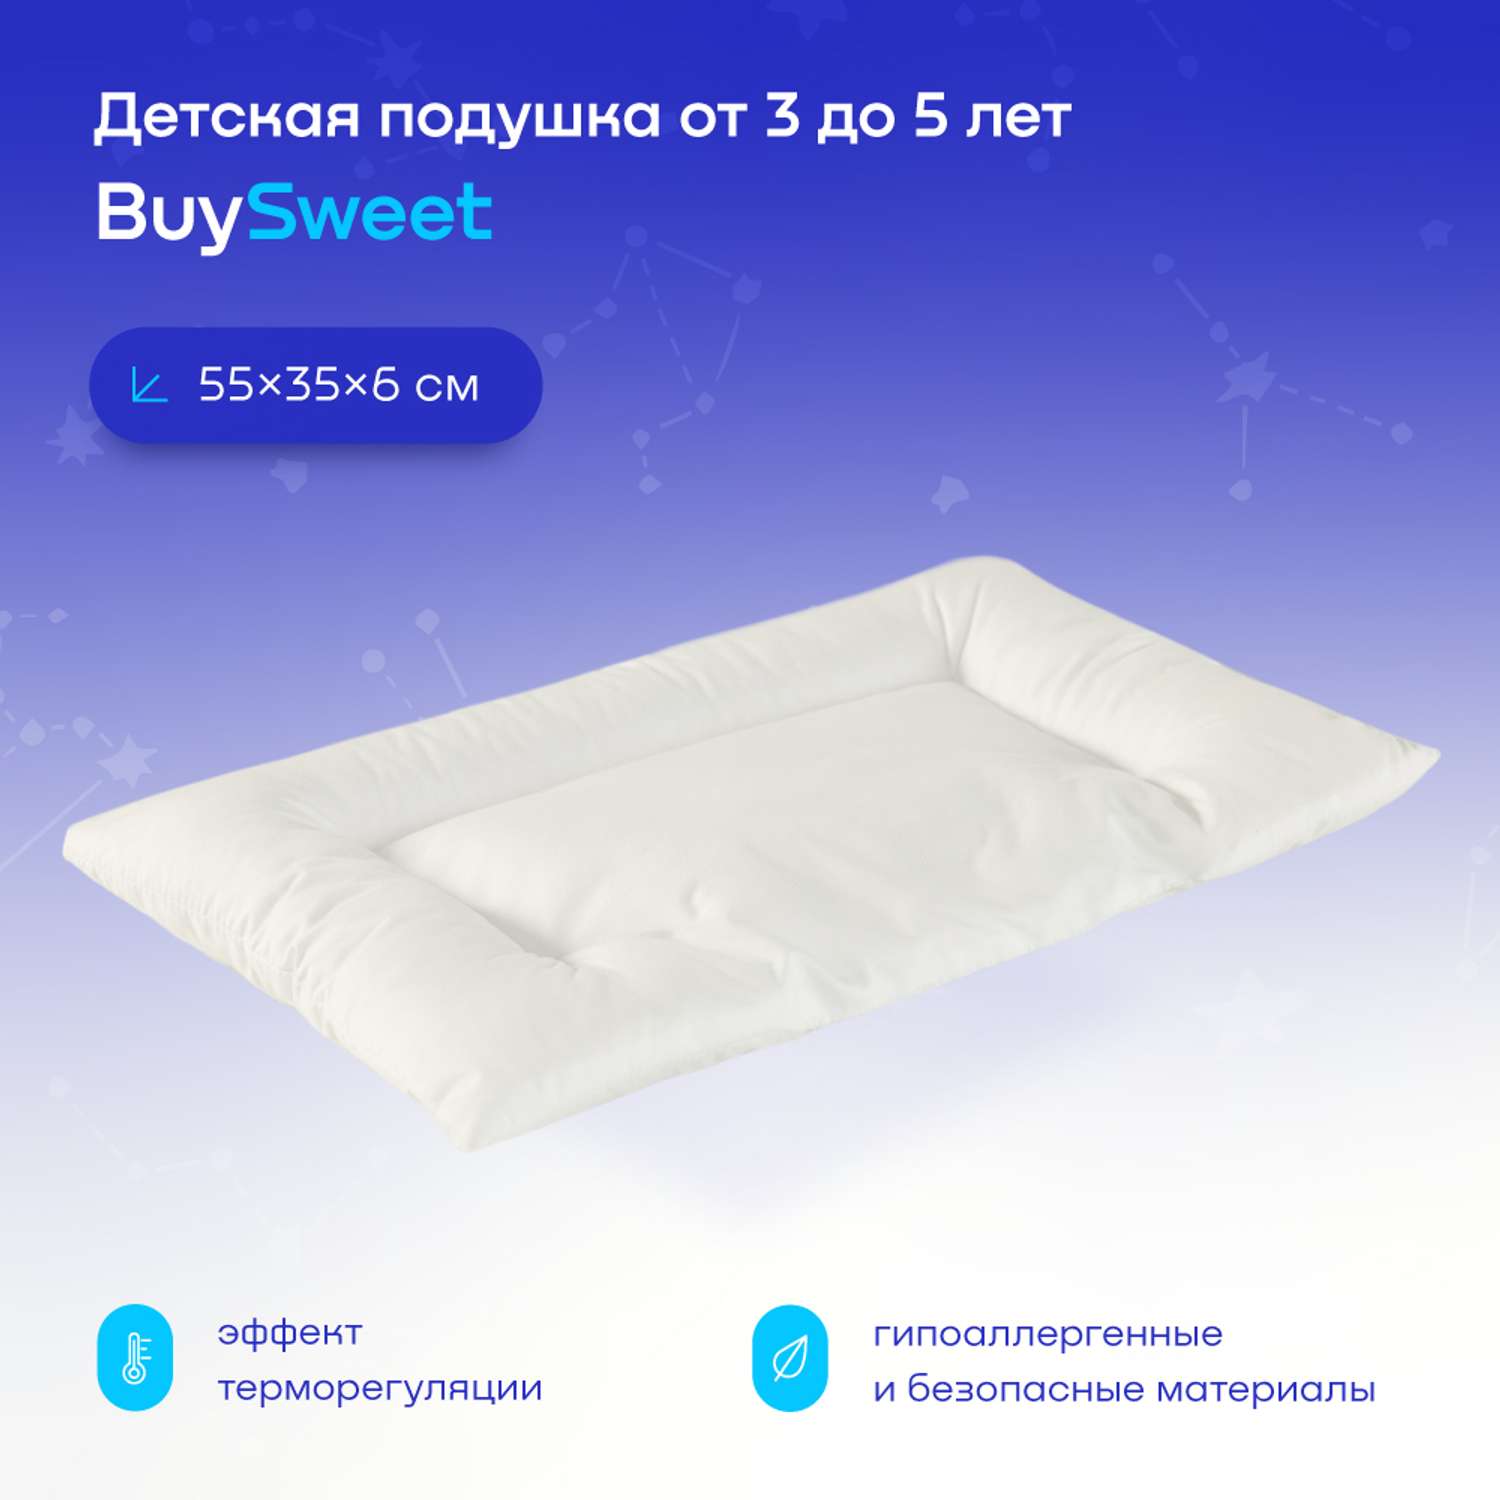 Анатомическая подушка buyson BuySweet от 3 до 5 лет 35х55 см высота 6 см - фото 1